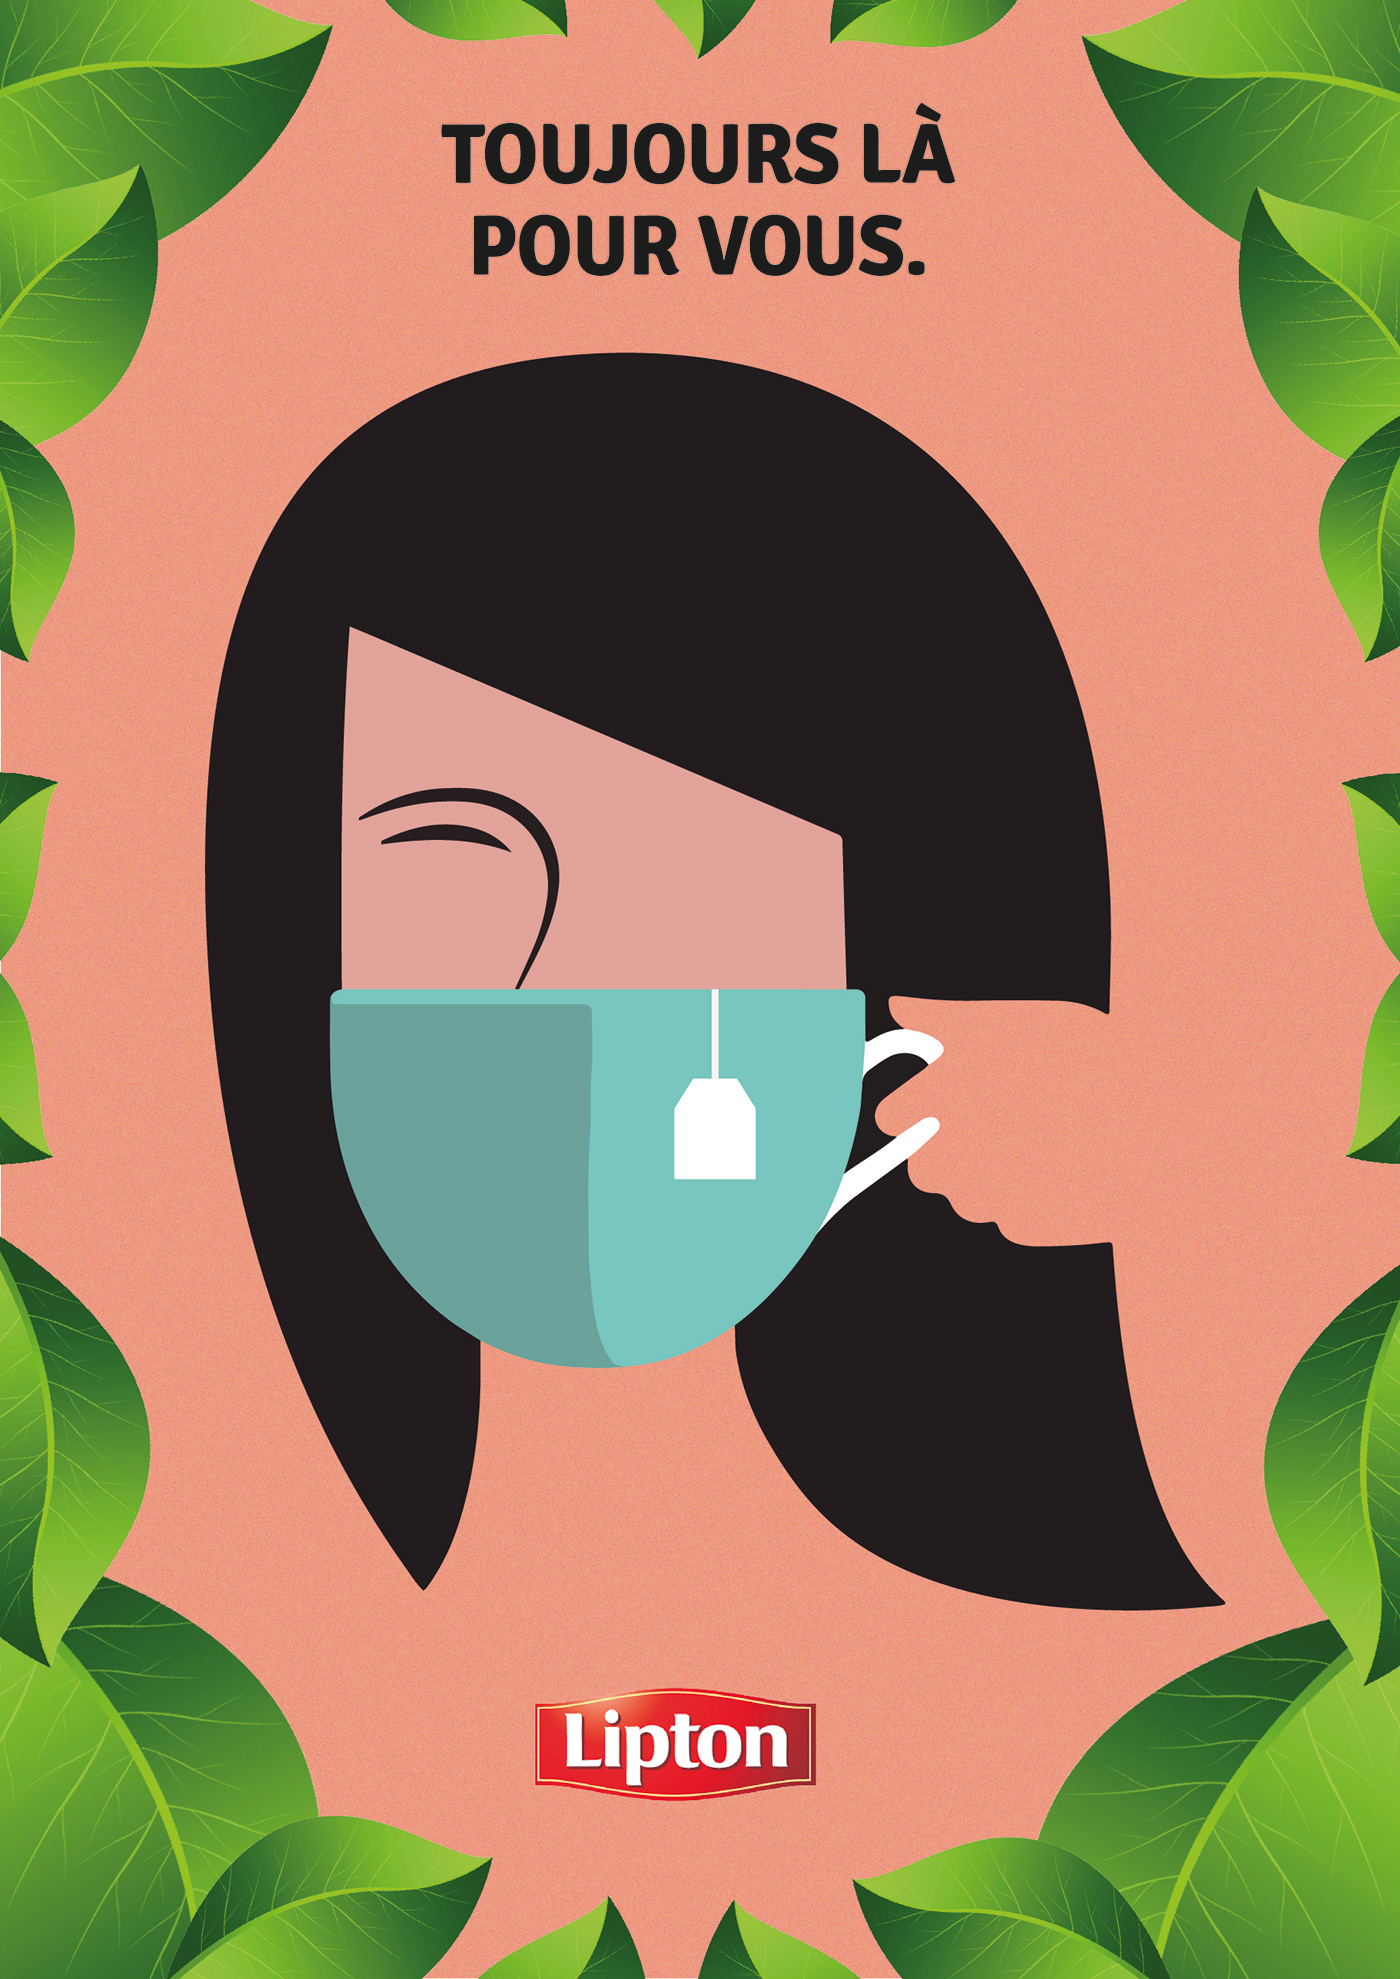 Coronavirus cup of tea Diversity Face mask green tea ILLUSTRATION  Lipton multiracial portraits tea